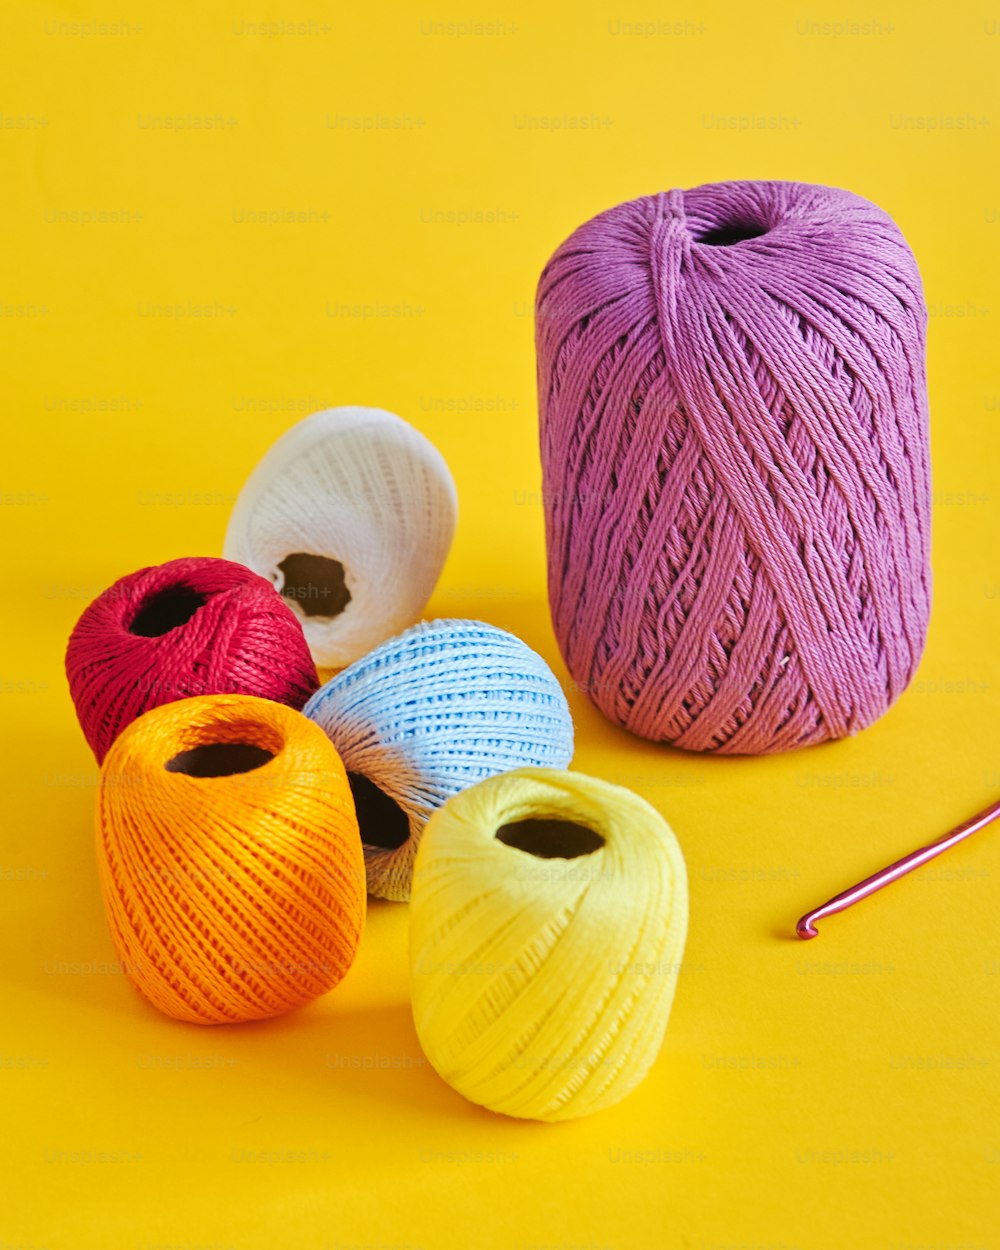 um grupo de bolas de fio ao lado de um gancho de crochê